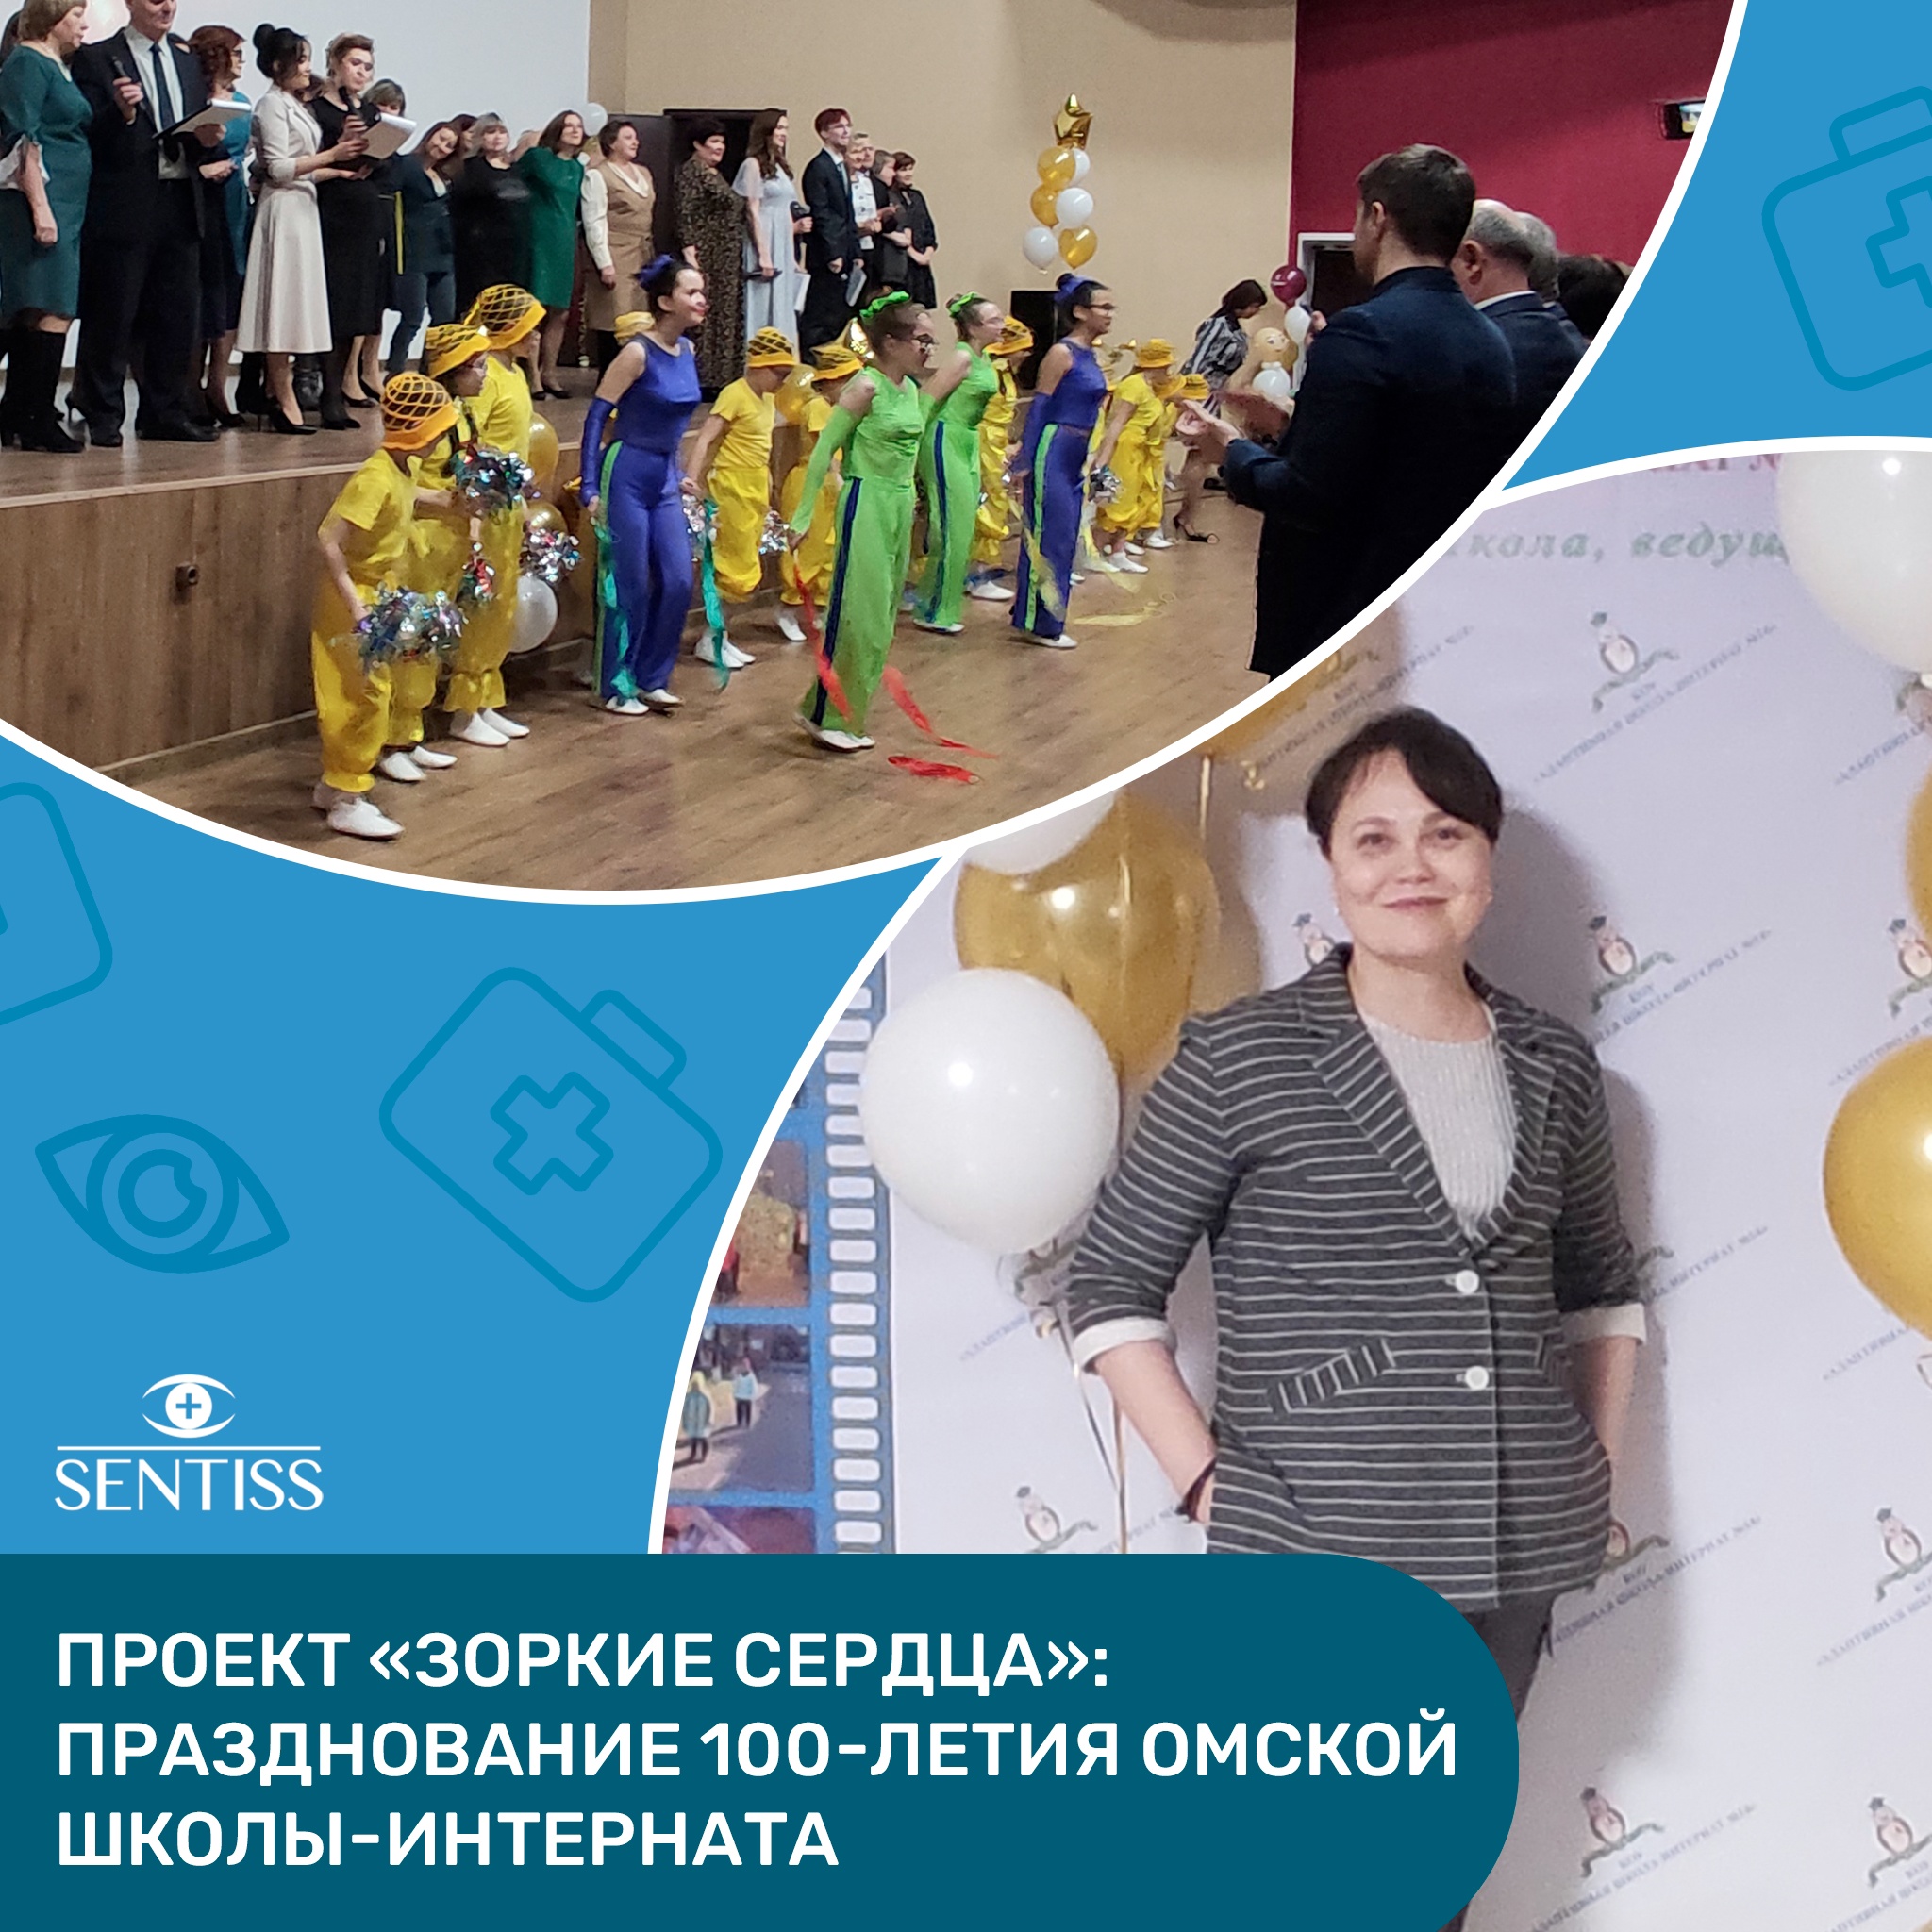 Празднование 100-летия Омской школы-интерната